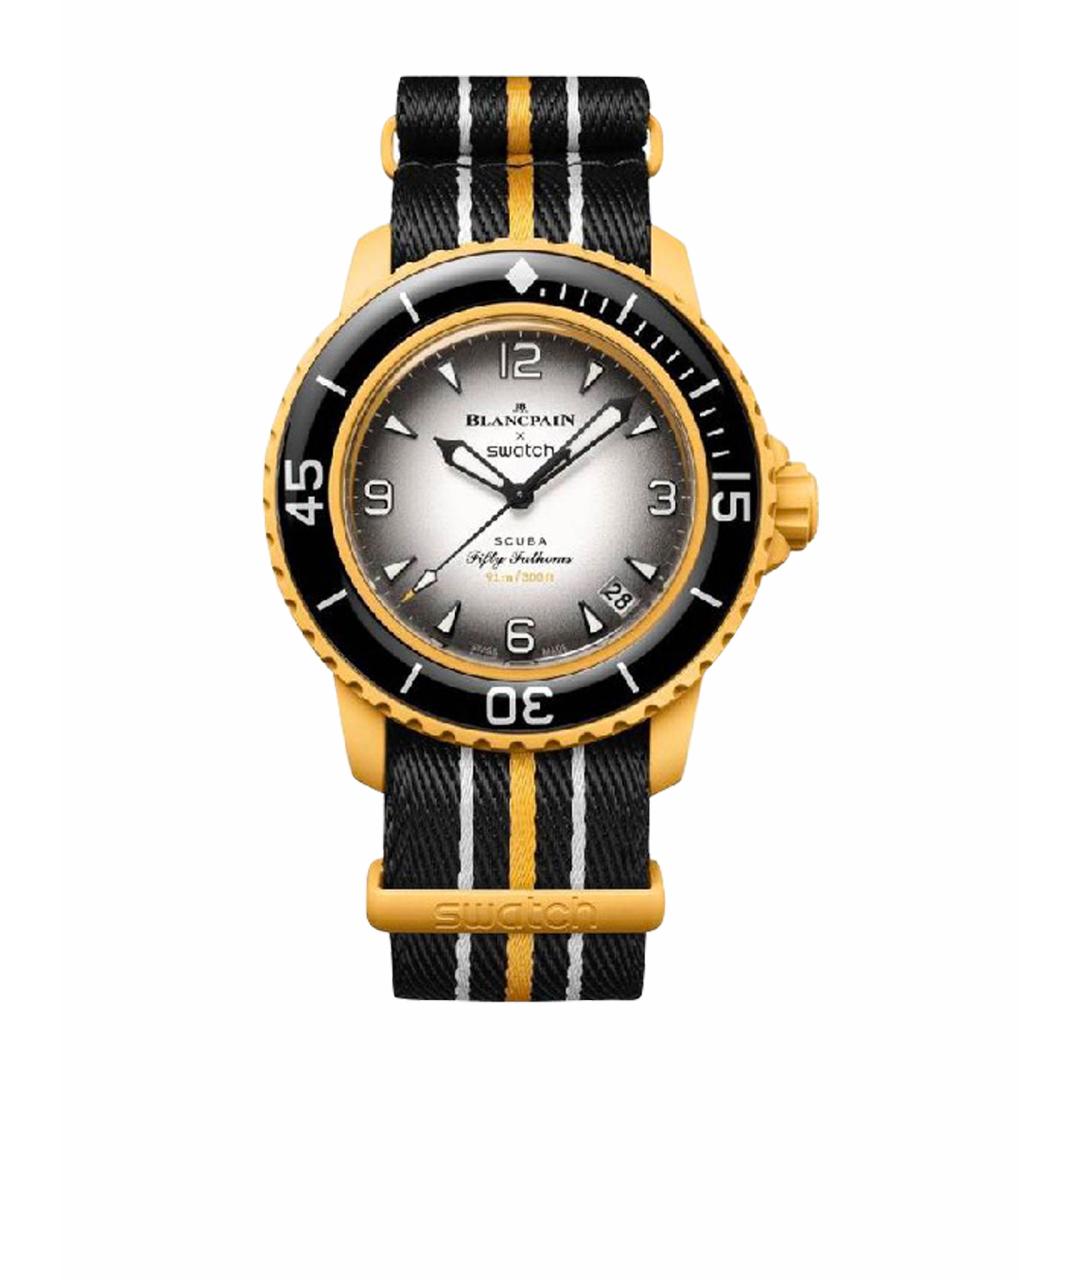 Blancpain Желтые стальные часы, фото 1